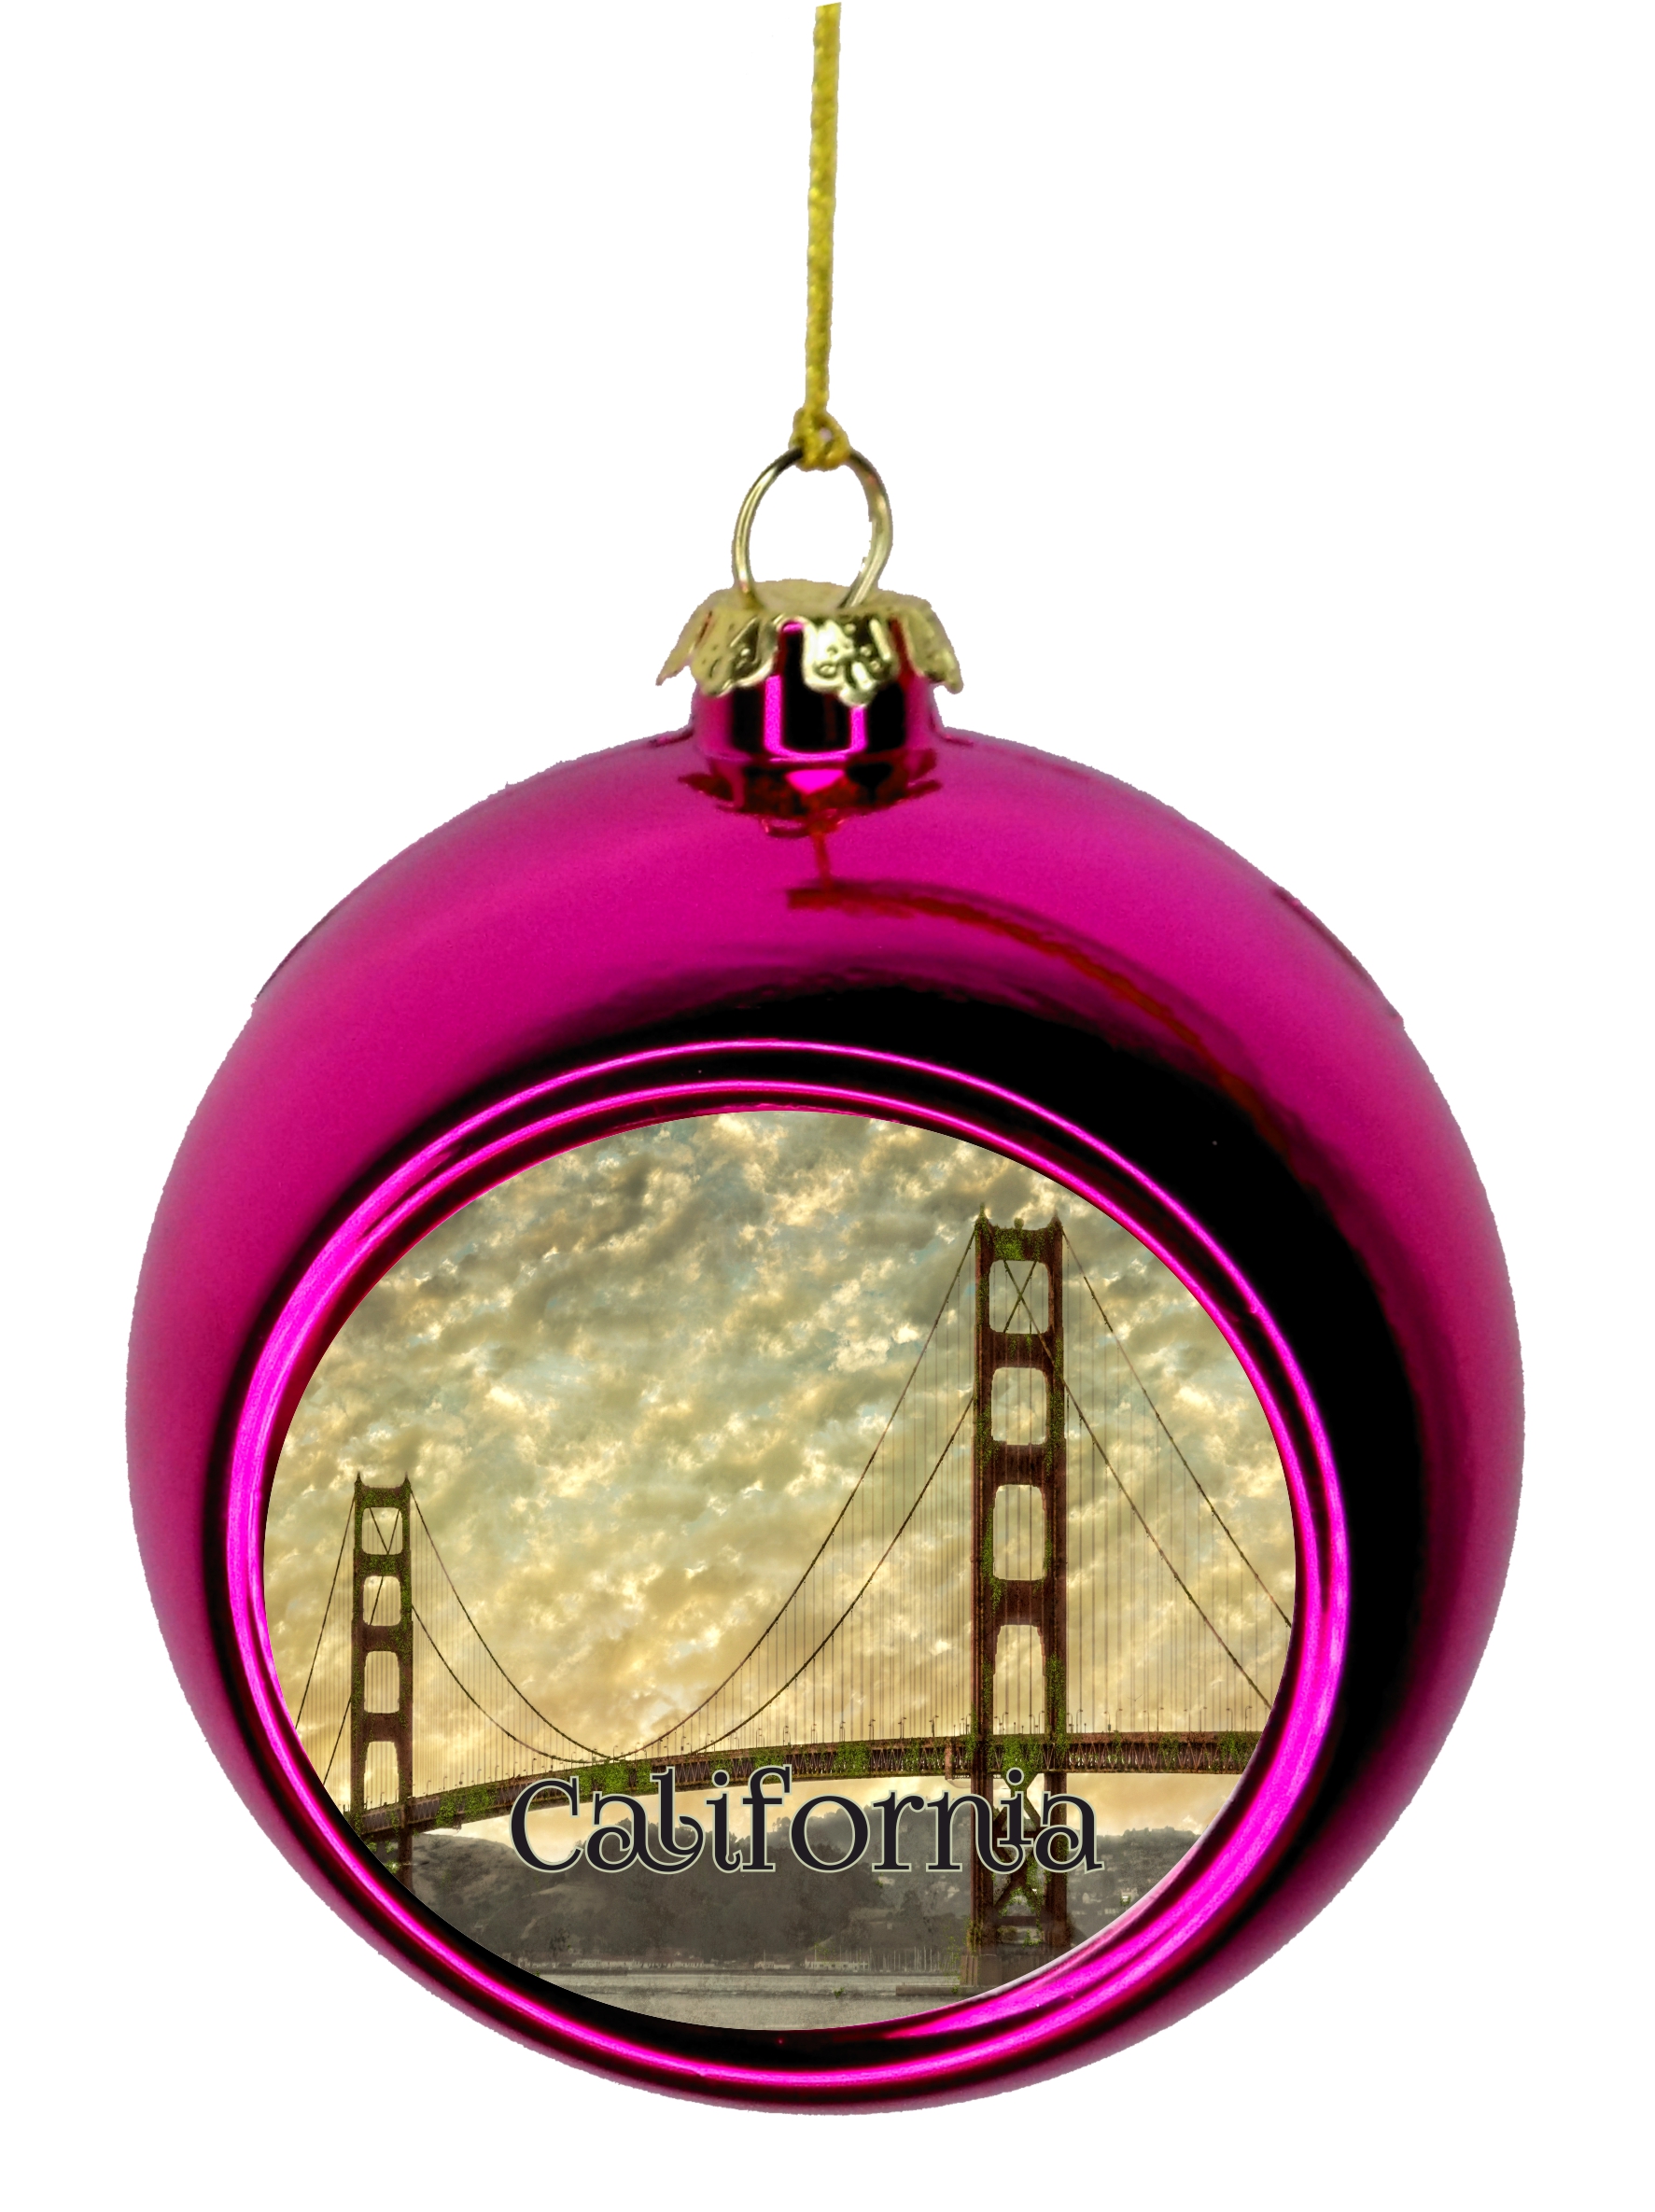 California San Francisco Golden Gate Bridge Christmas Ornament Christmas Ornaments Travel Ornament Christmas DÃ©cor Pink Ball Ornaments - image 1 of 1